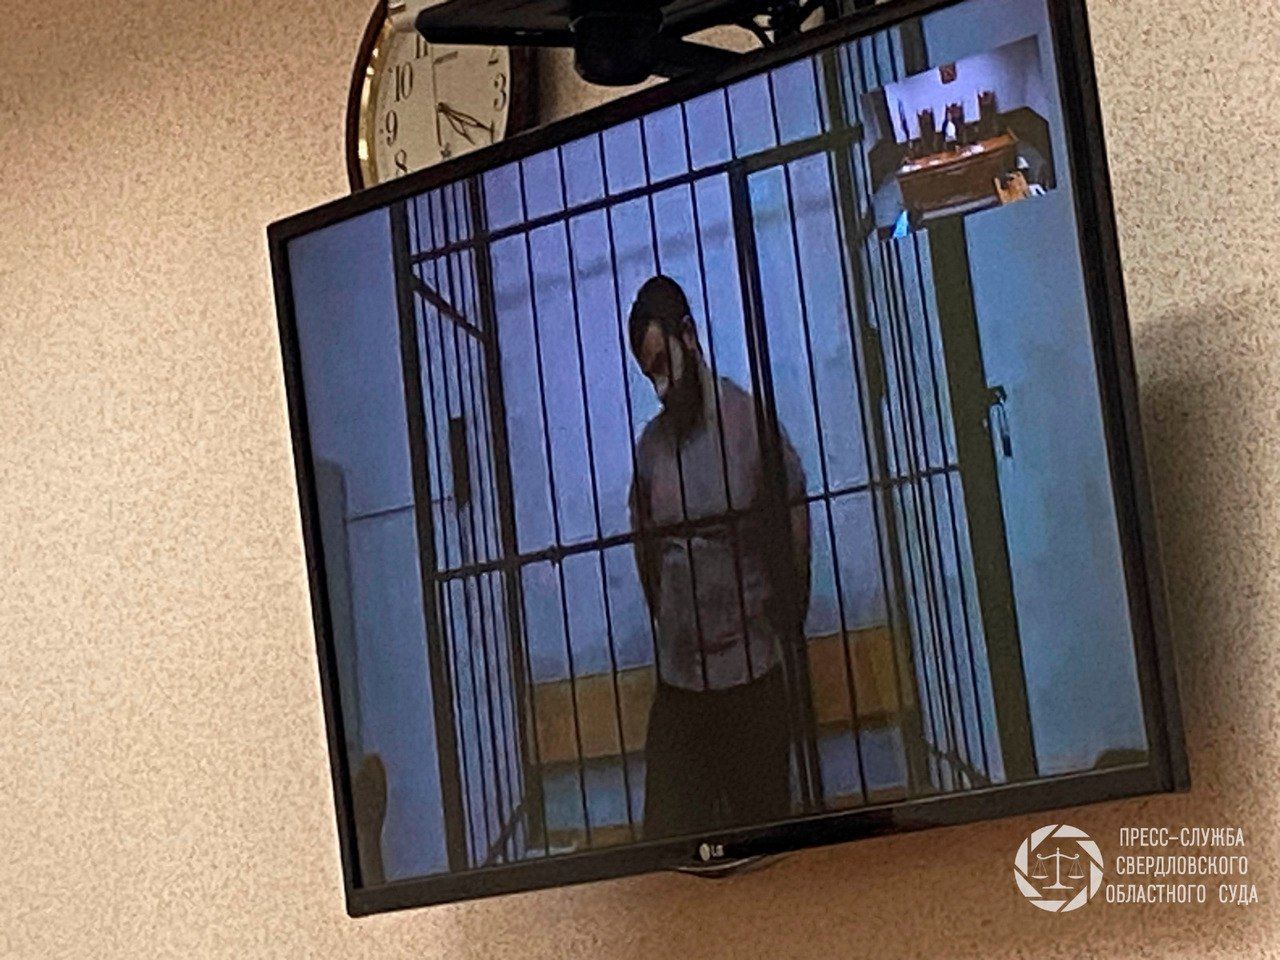 Облсуд освободил из-под стражи Газанфара Мамедова, обвиняемого по уголовному делу о пожаре в Сосьве